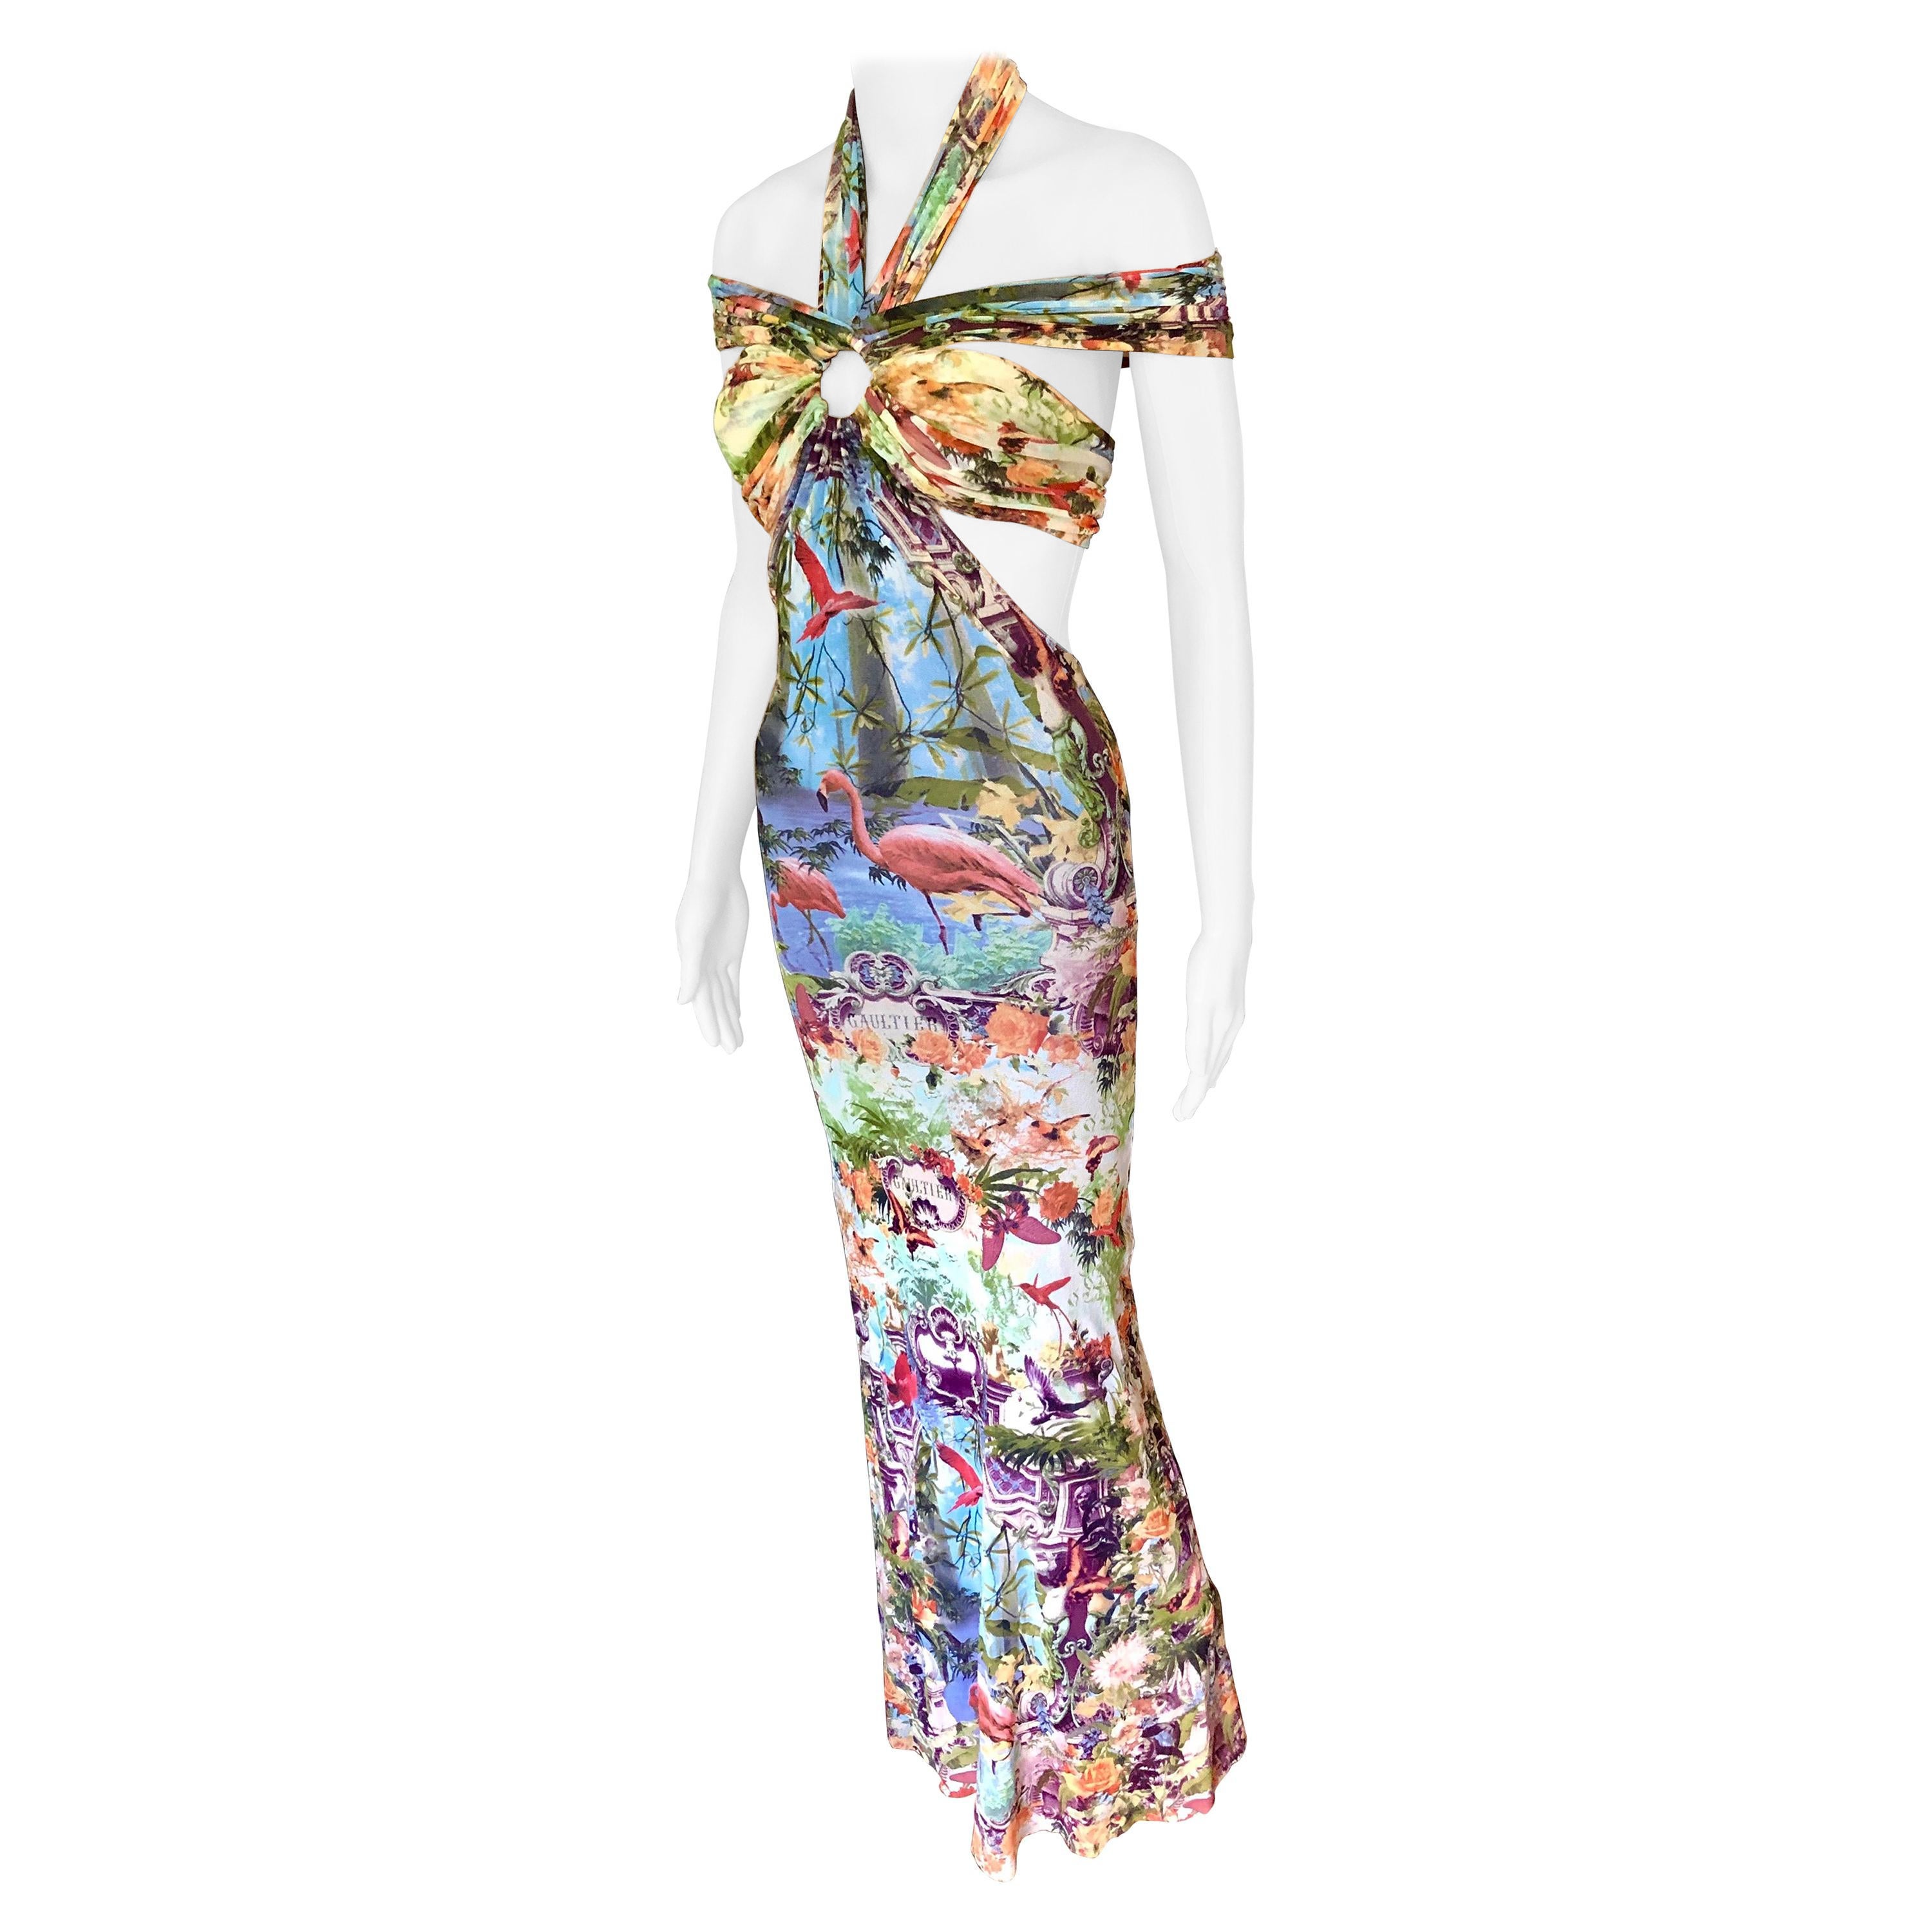 Jean Paul Gaultier Soleil S/S1999 Flamingo Tropical Print Cutout Mesh Maxi Dress For Sale